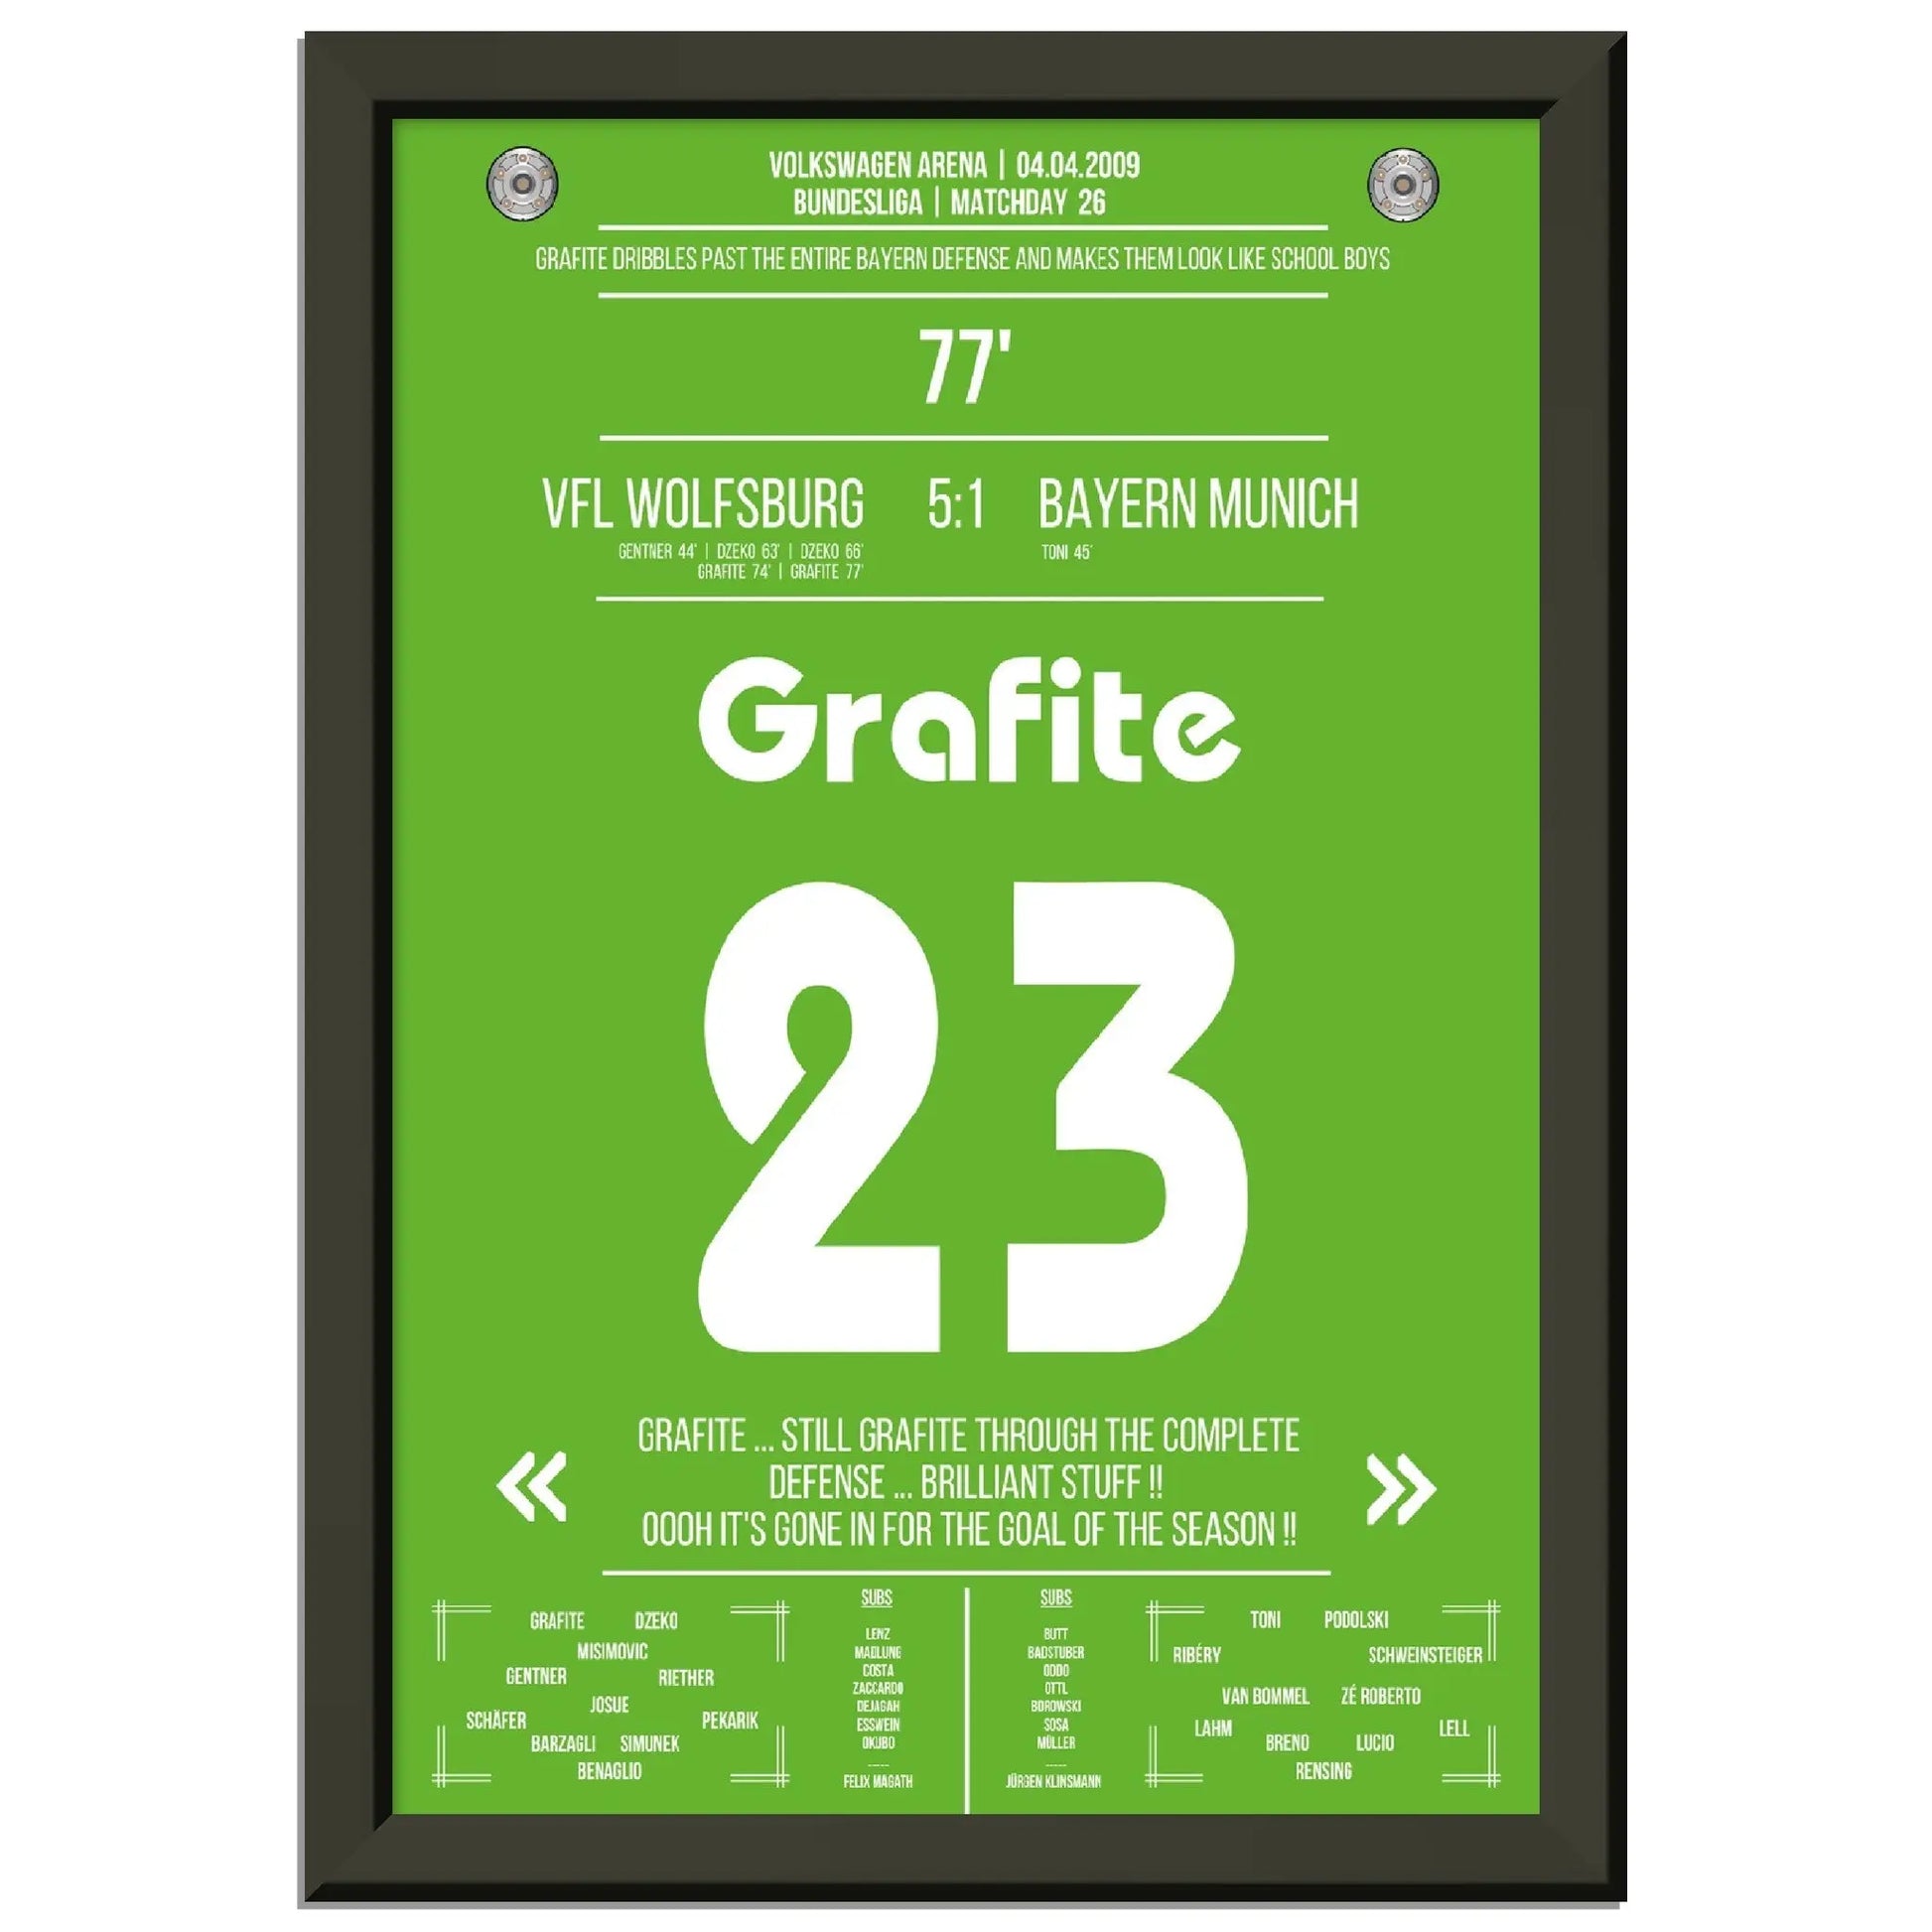 Grafite's legendäres Tor in Wolfsburg's 5-1 Sieg gegen die Bayern 2009 